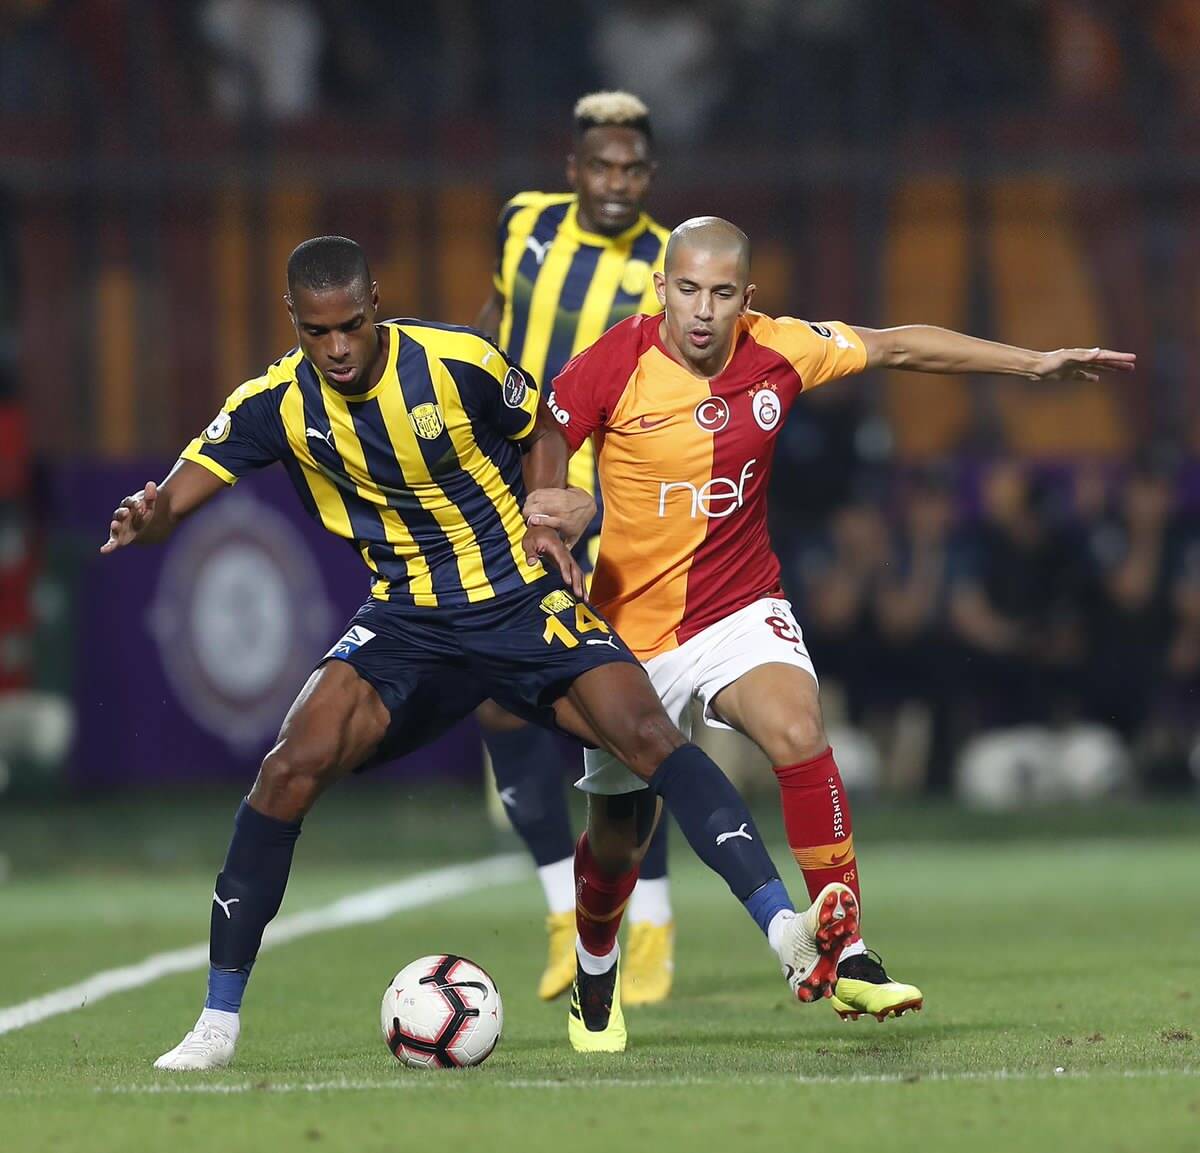 فيغولي يستهل حملة الدفاع عن لقب الدوري التركي بالفوز على أنقرة 5